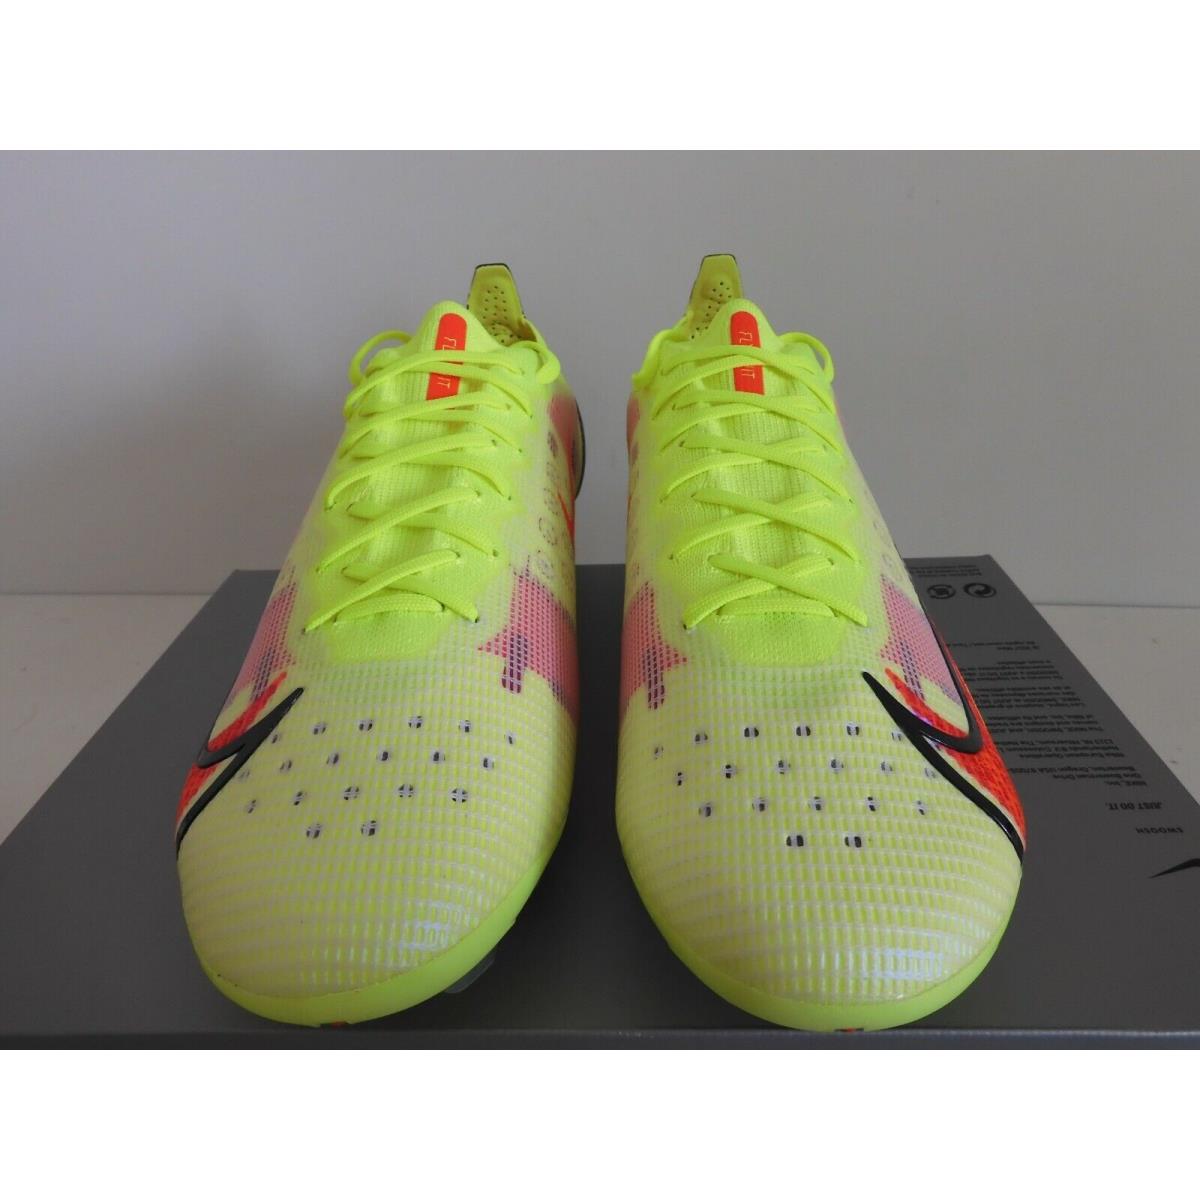 Nike shoes Vapor - Yellow 1